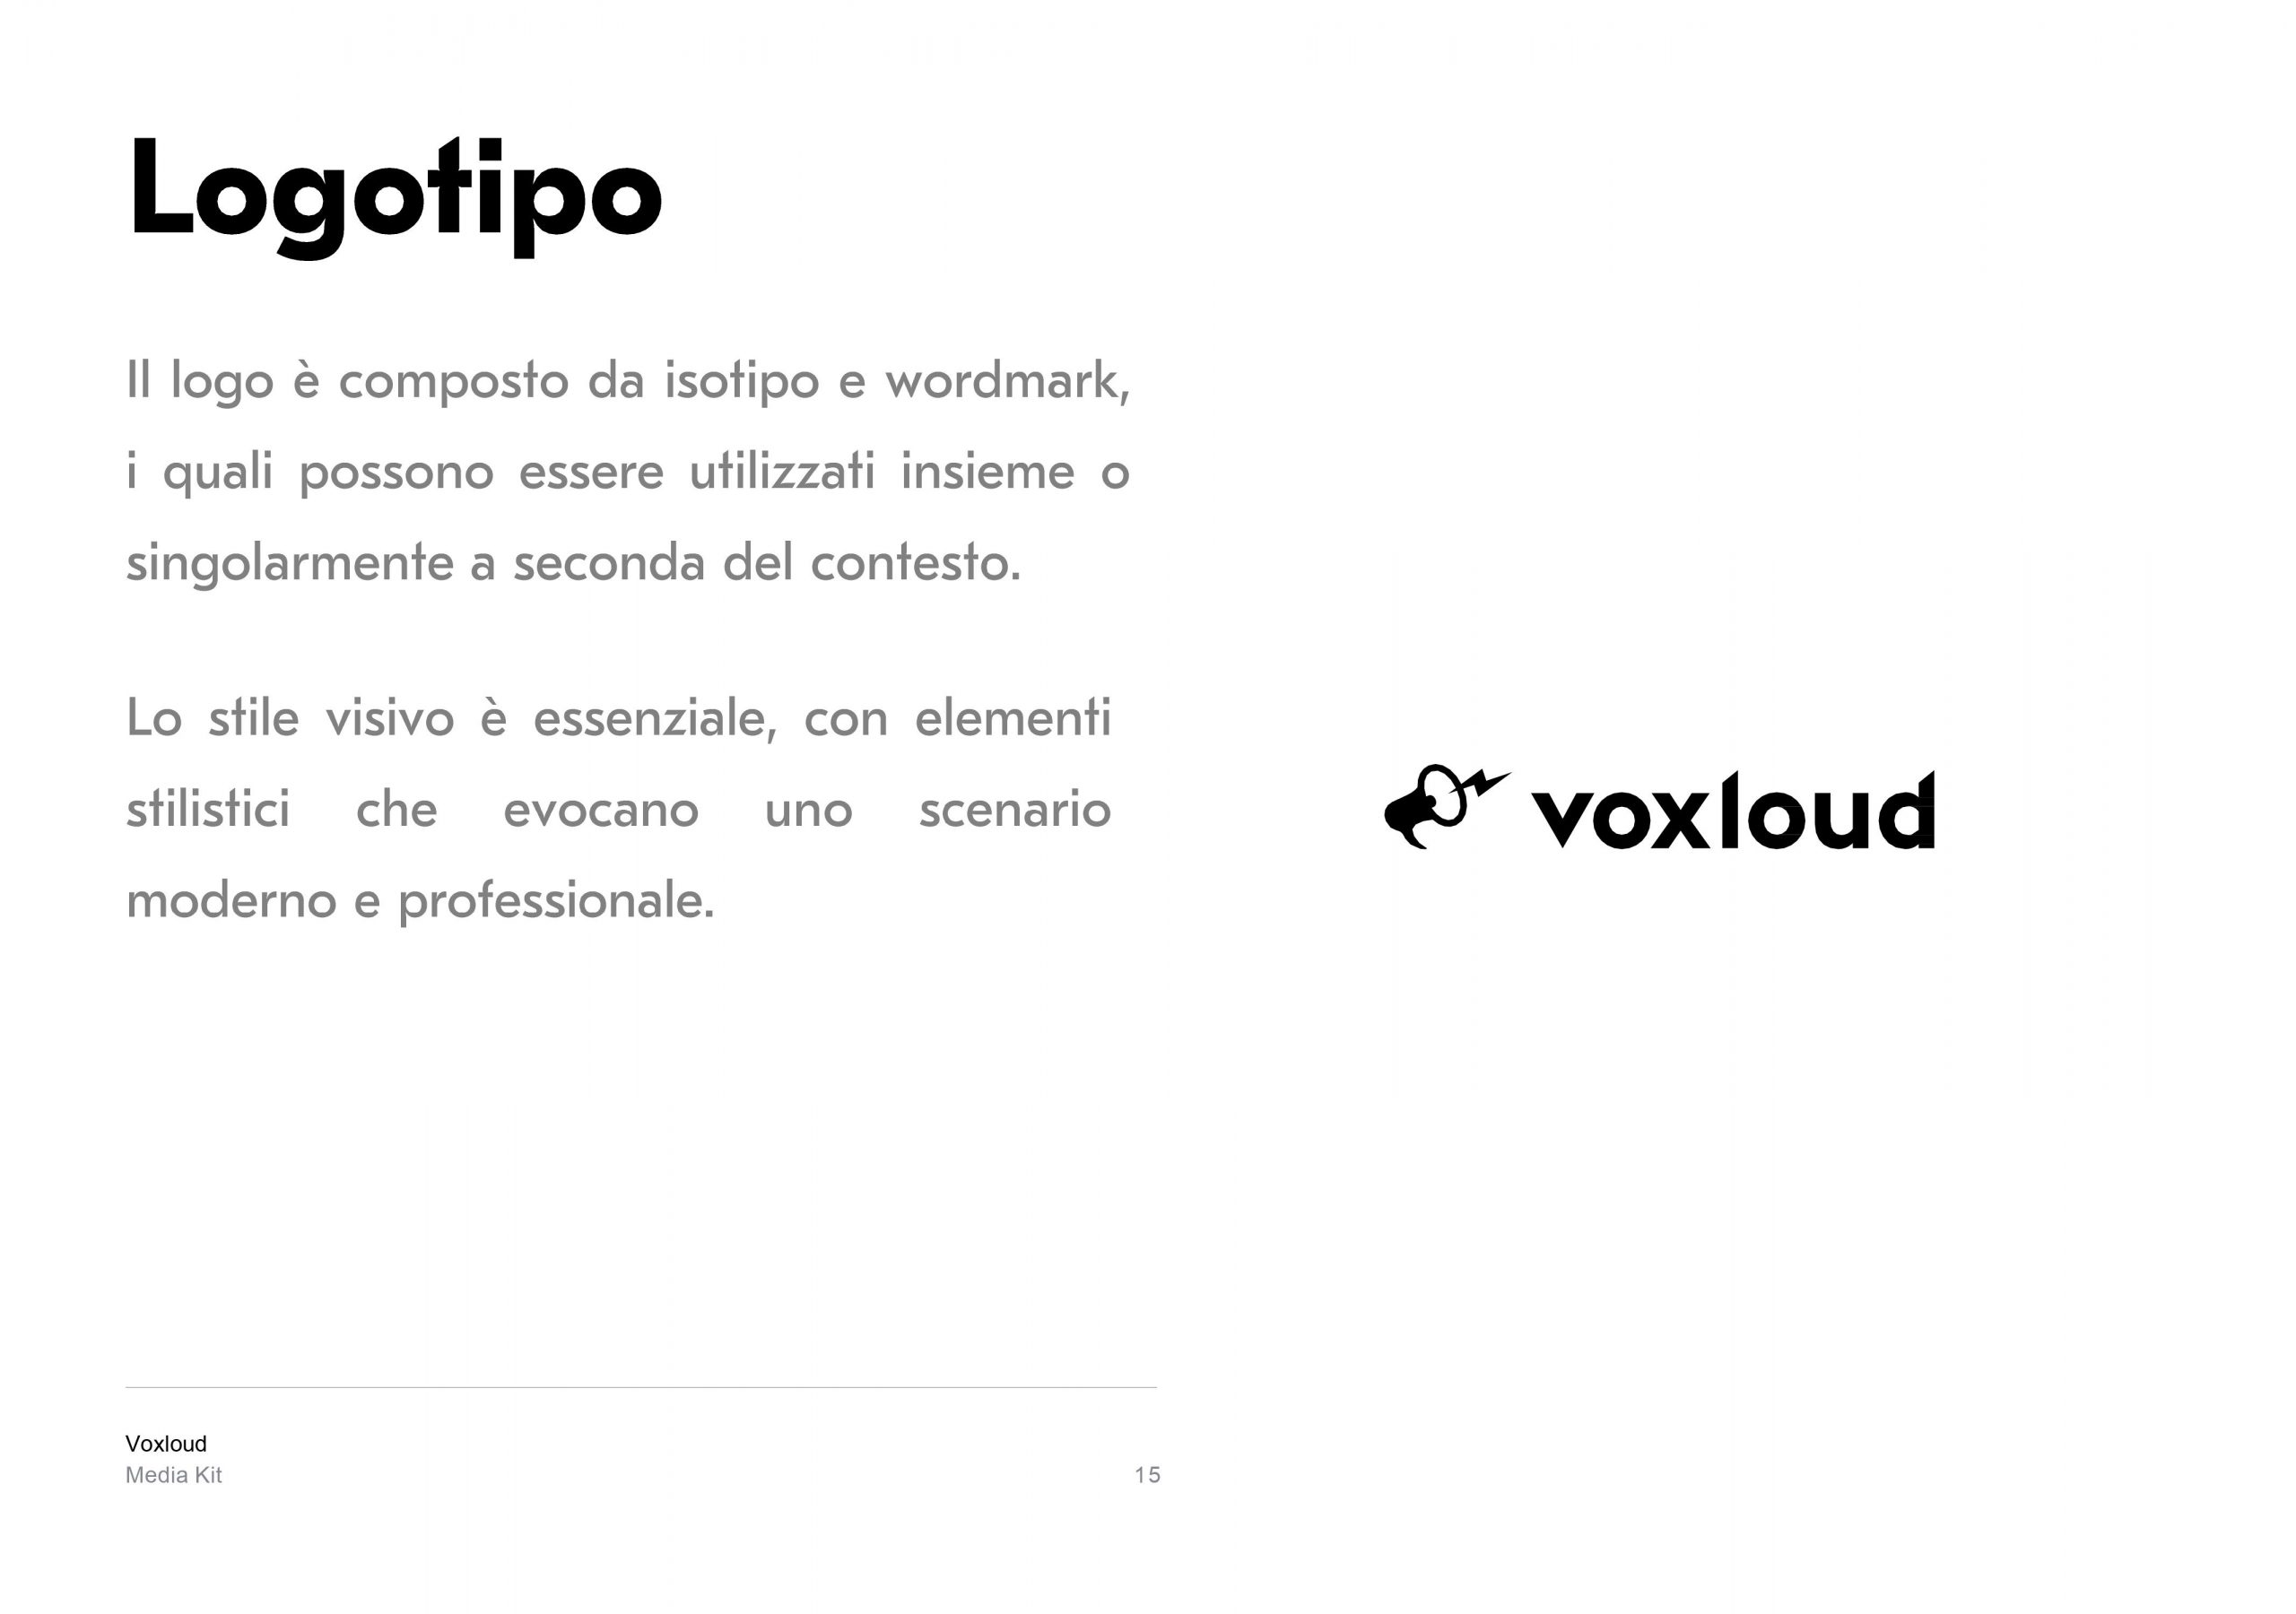 Voxloud Media Kit_IT_15